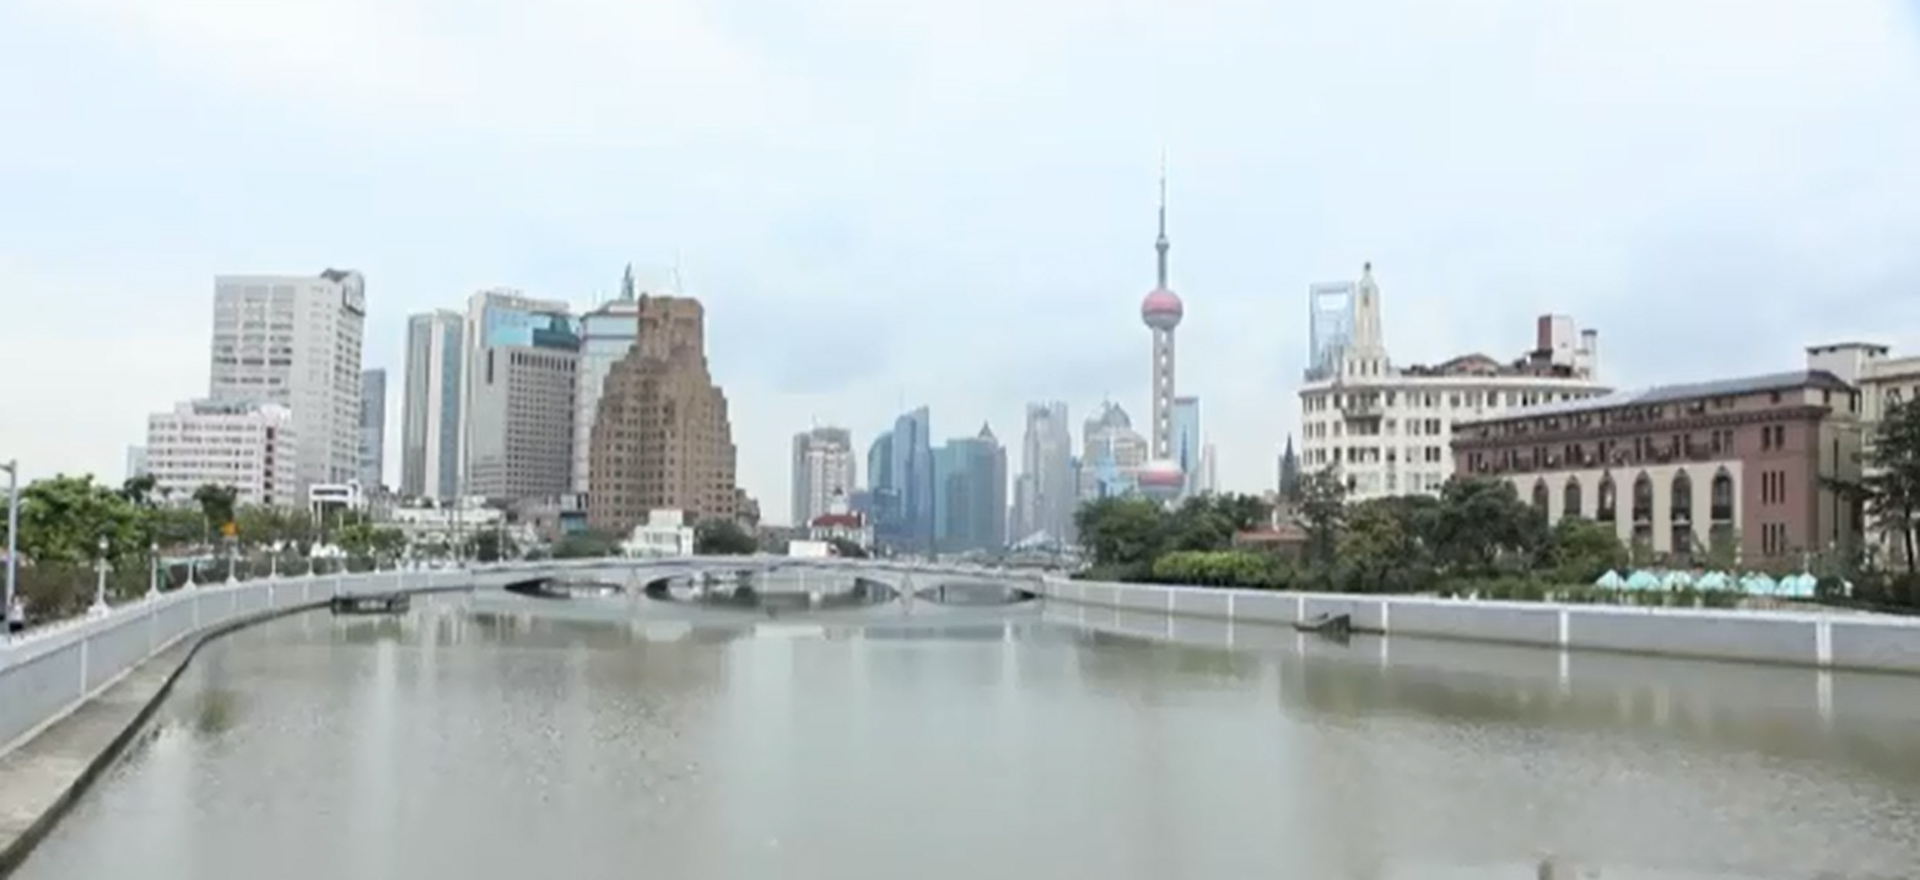 Comment Shanghaï, ville durable, gère t-elle son développement urbain ?